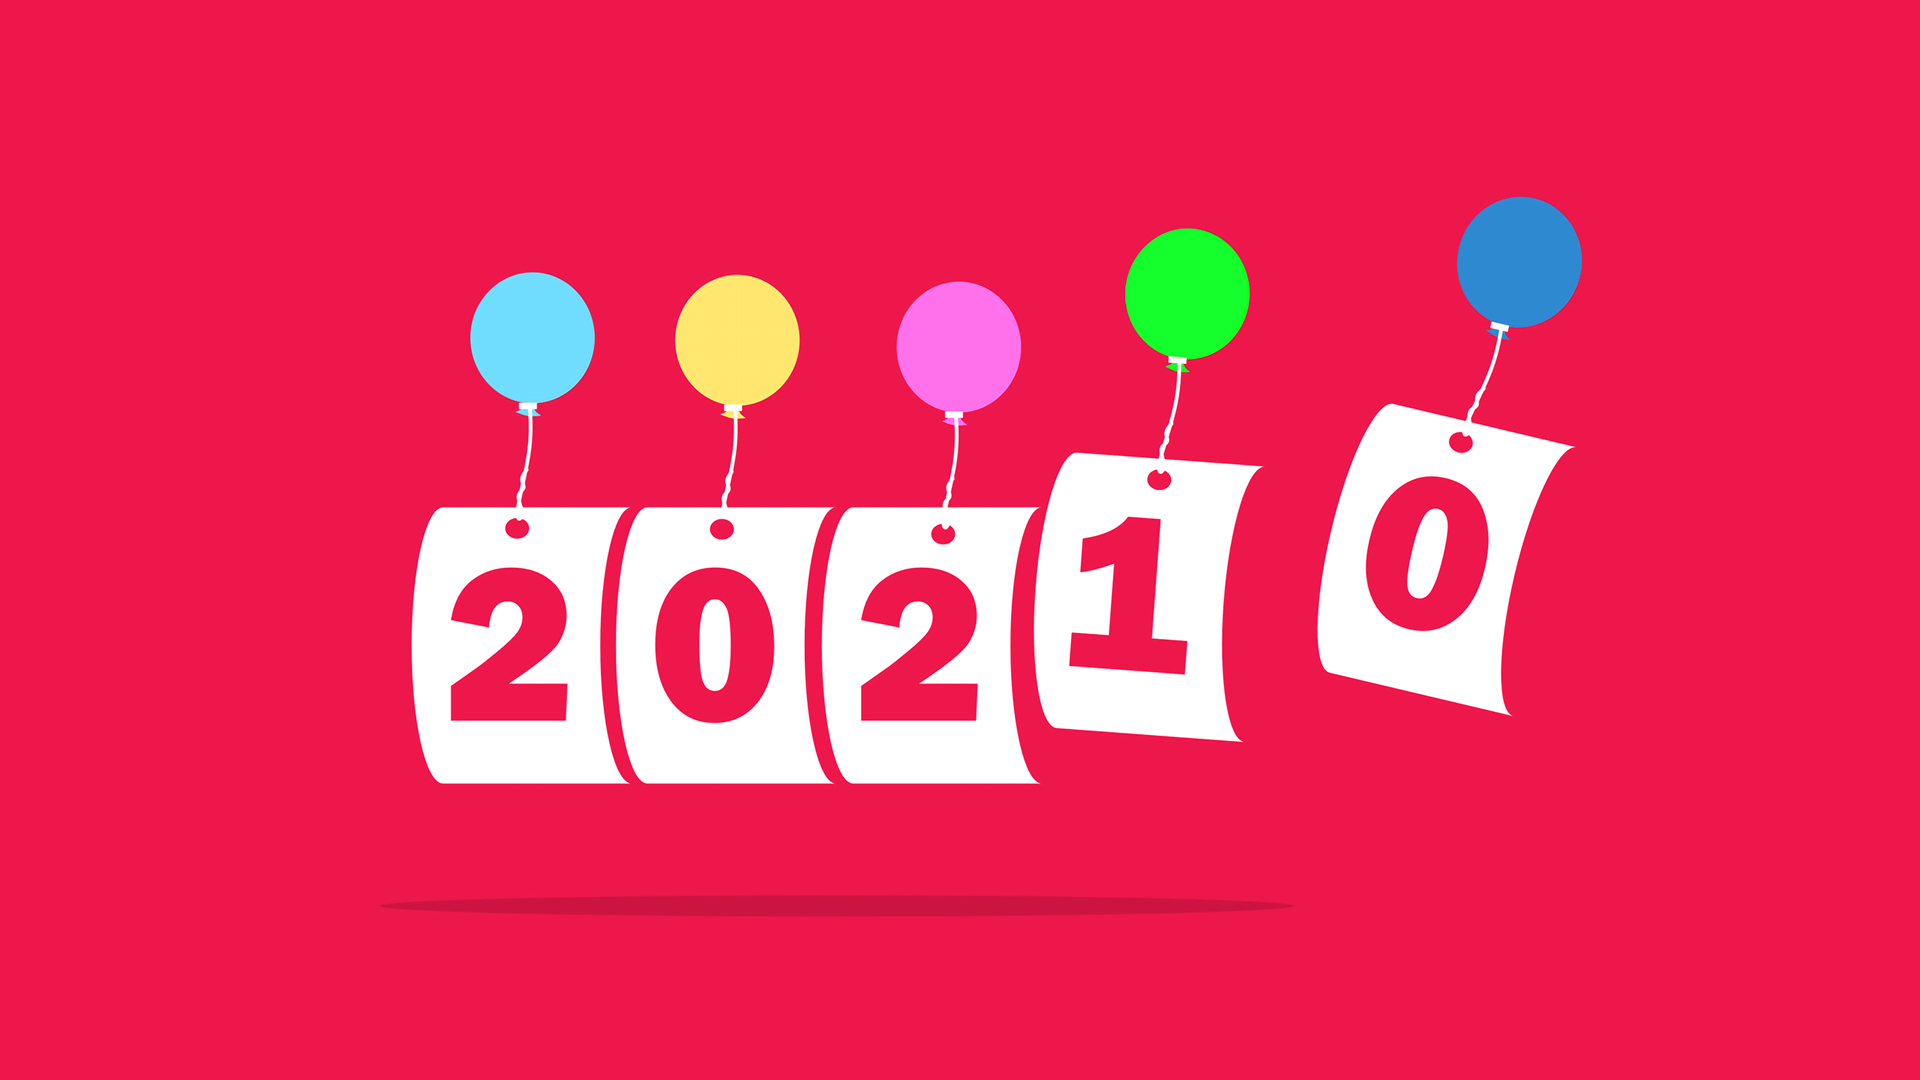 2021年新年快乐电脑壁纸高清大图预览1920x1080 节日壁纸下载 彼岸桌面